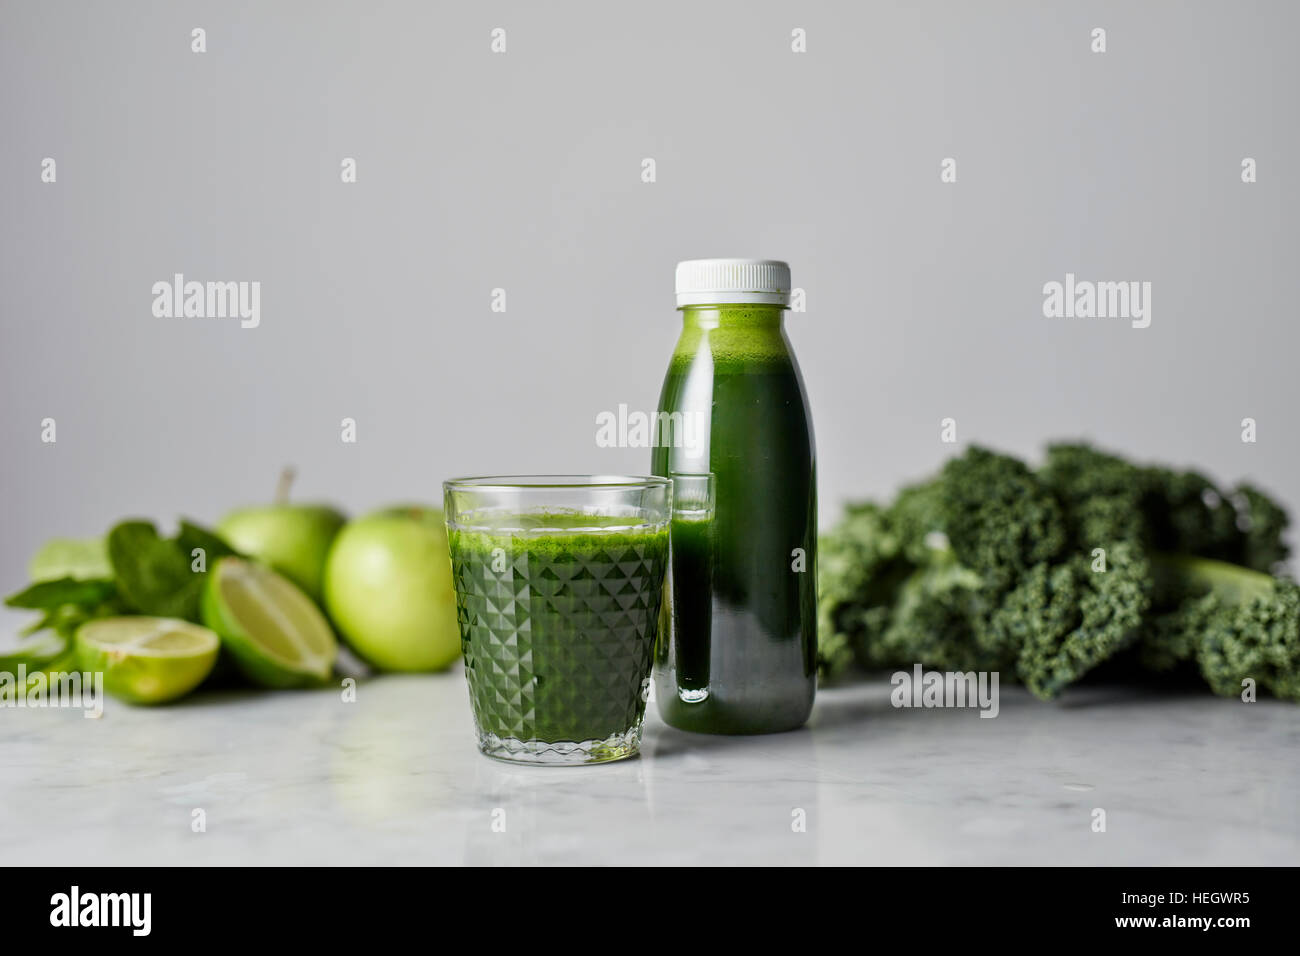 Le jus de chou frais vert vitamines apple bio lime kale verre bouteille en plastique Banque D'Images